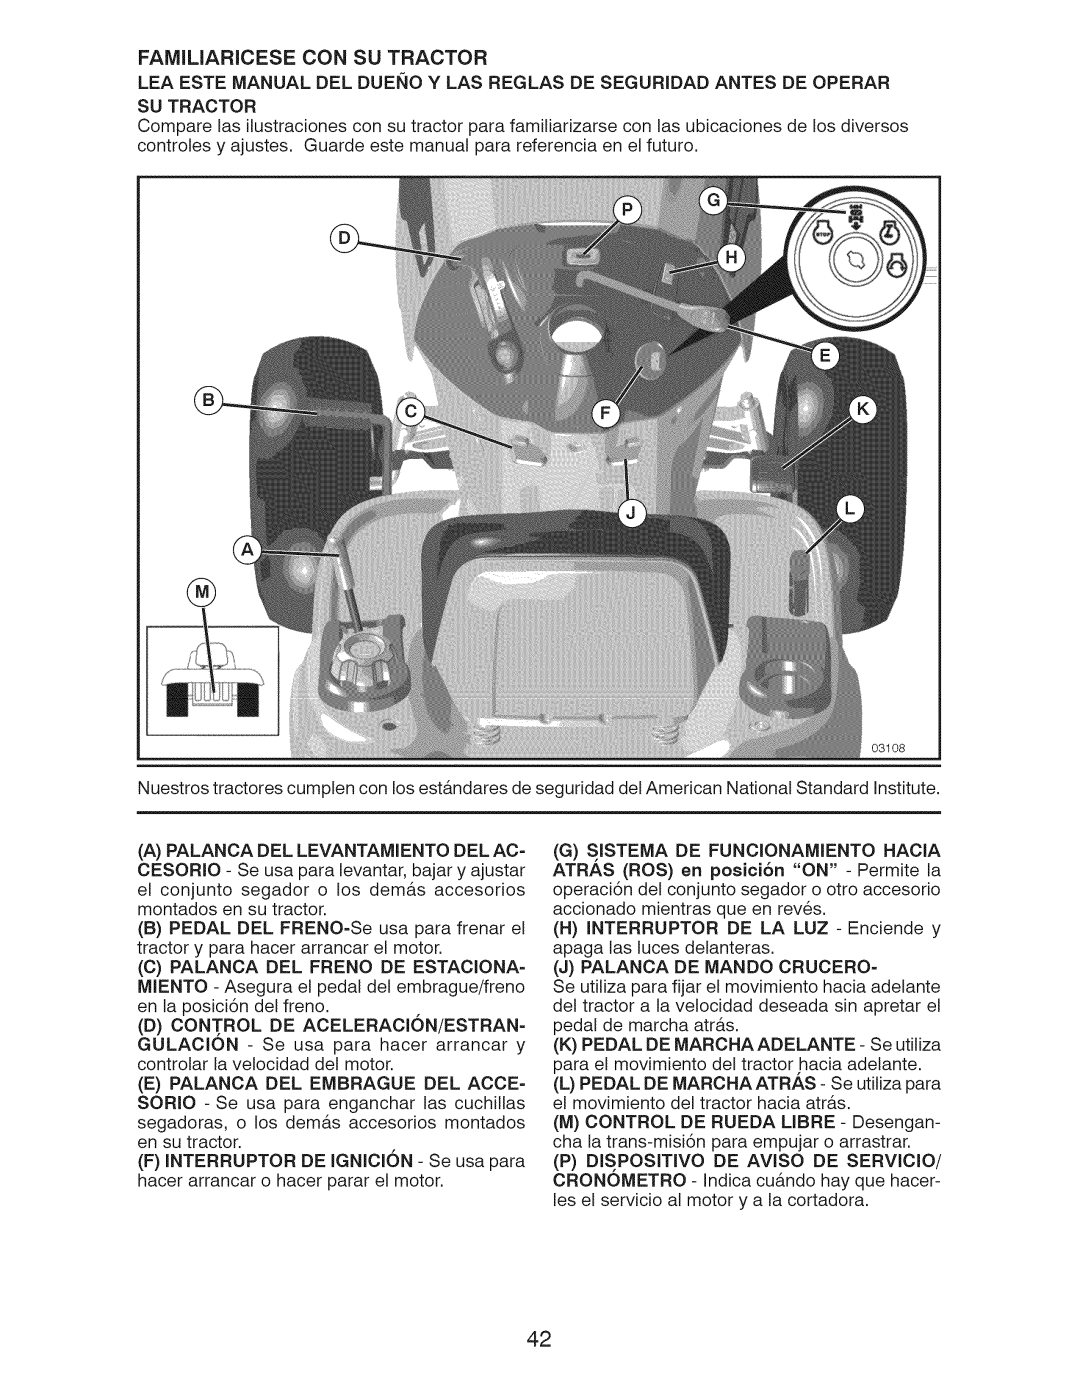 Craftsman 917.289283 owner manual Familiaricese Con Su Tractor, KPEDAL DE MARCHAADELANTE - Se utiliza 